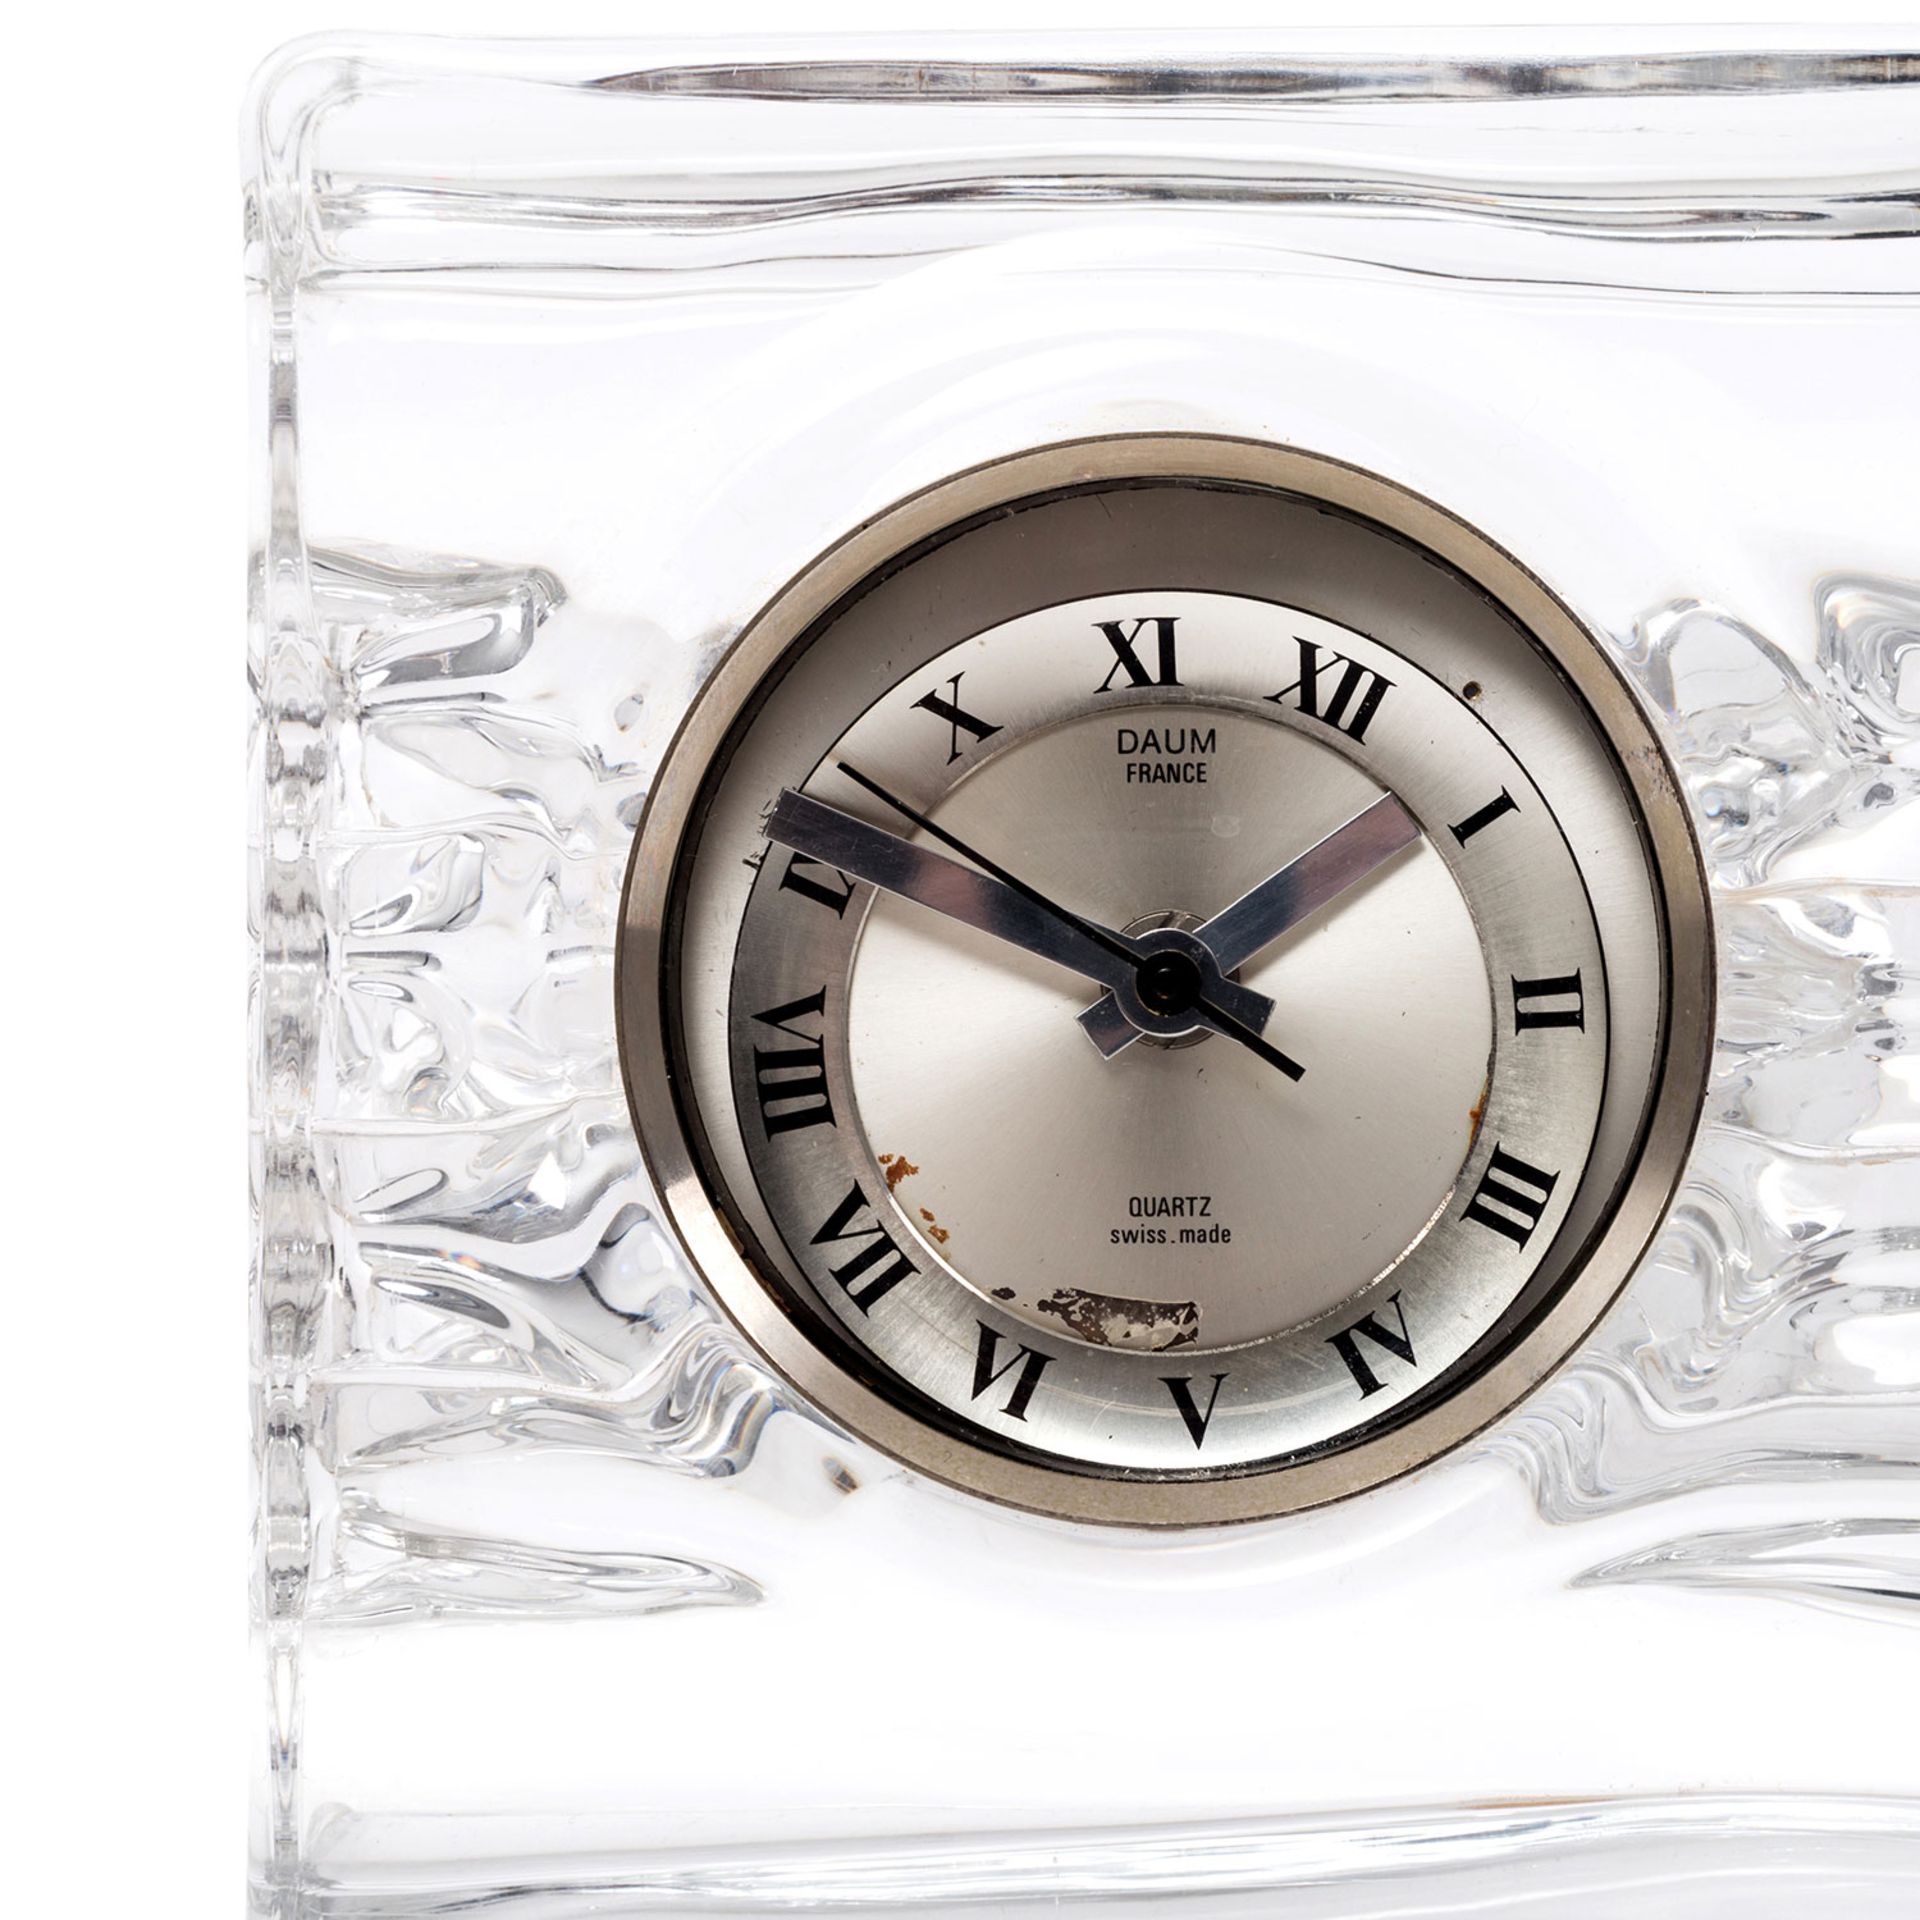 DAUM Quartz-Uhr, 20.Jh.quadratischer Glaskorpus mit eingesetzter Uhr, batteriebetrieben, - Image 2 of 4